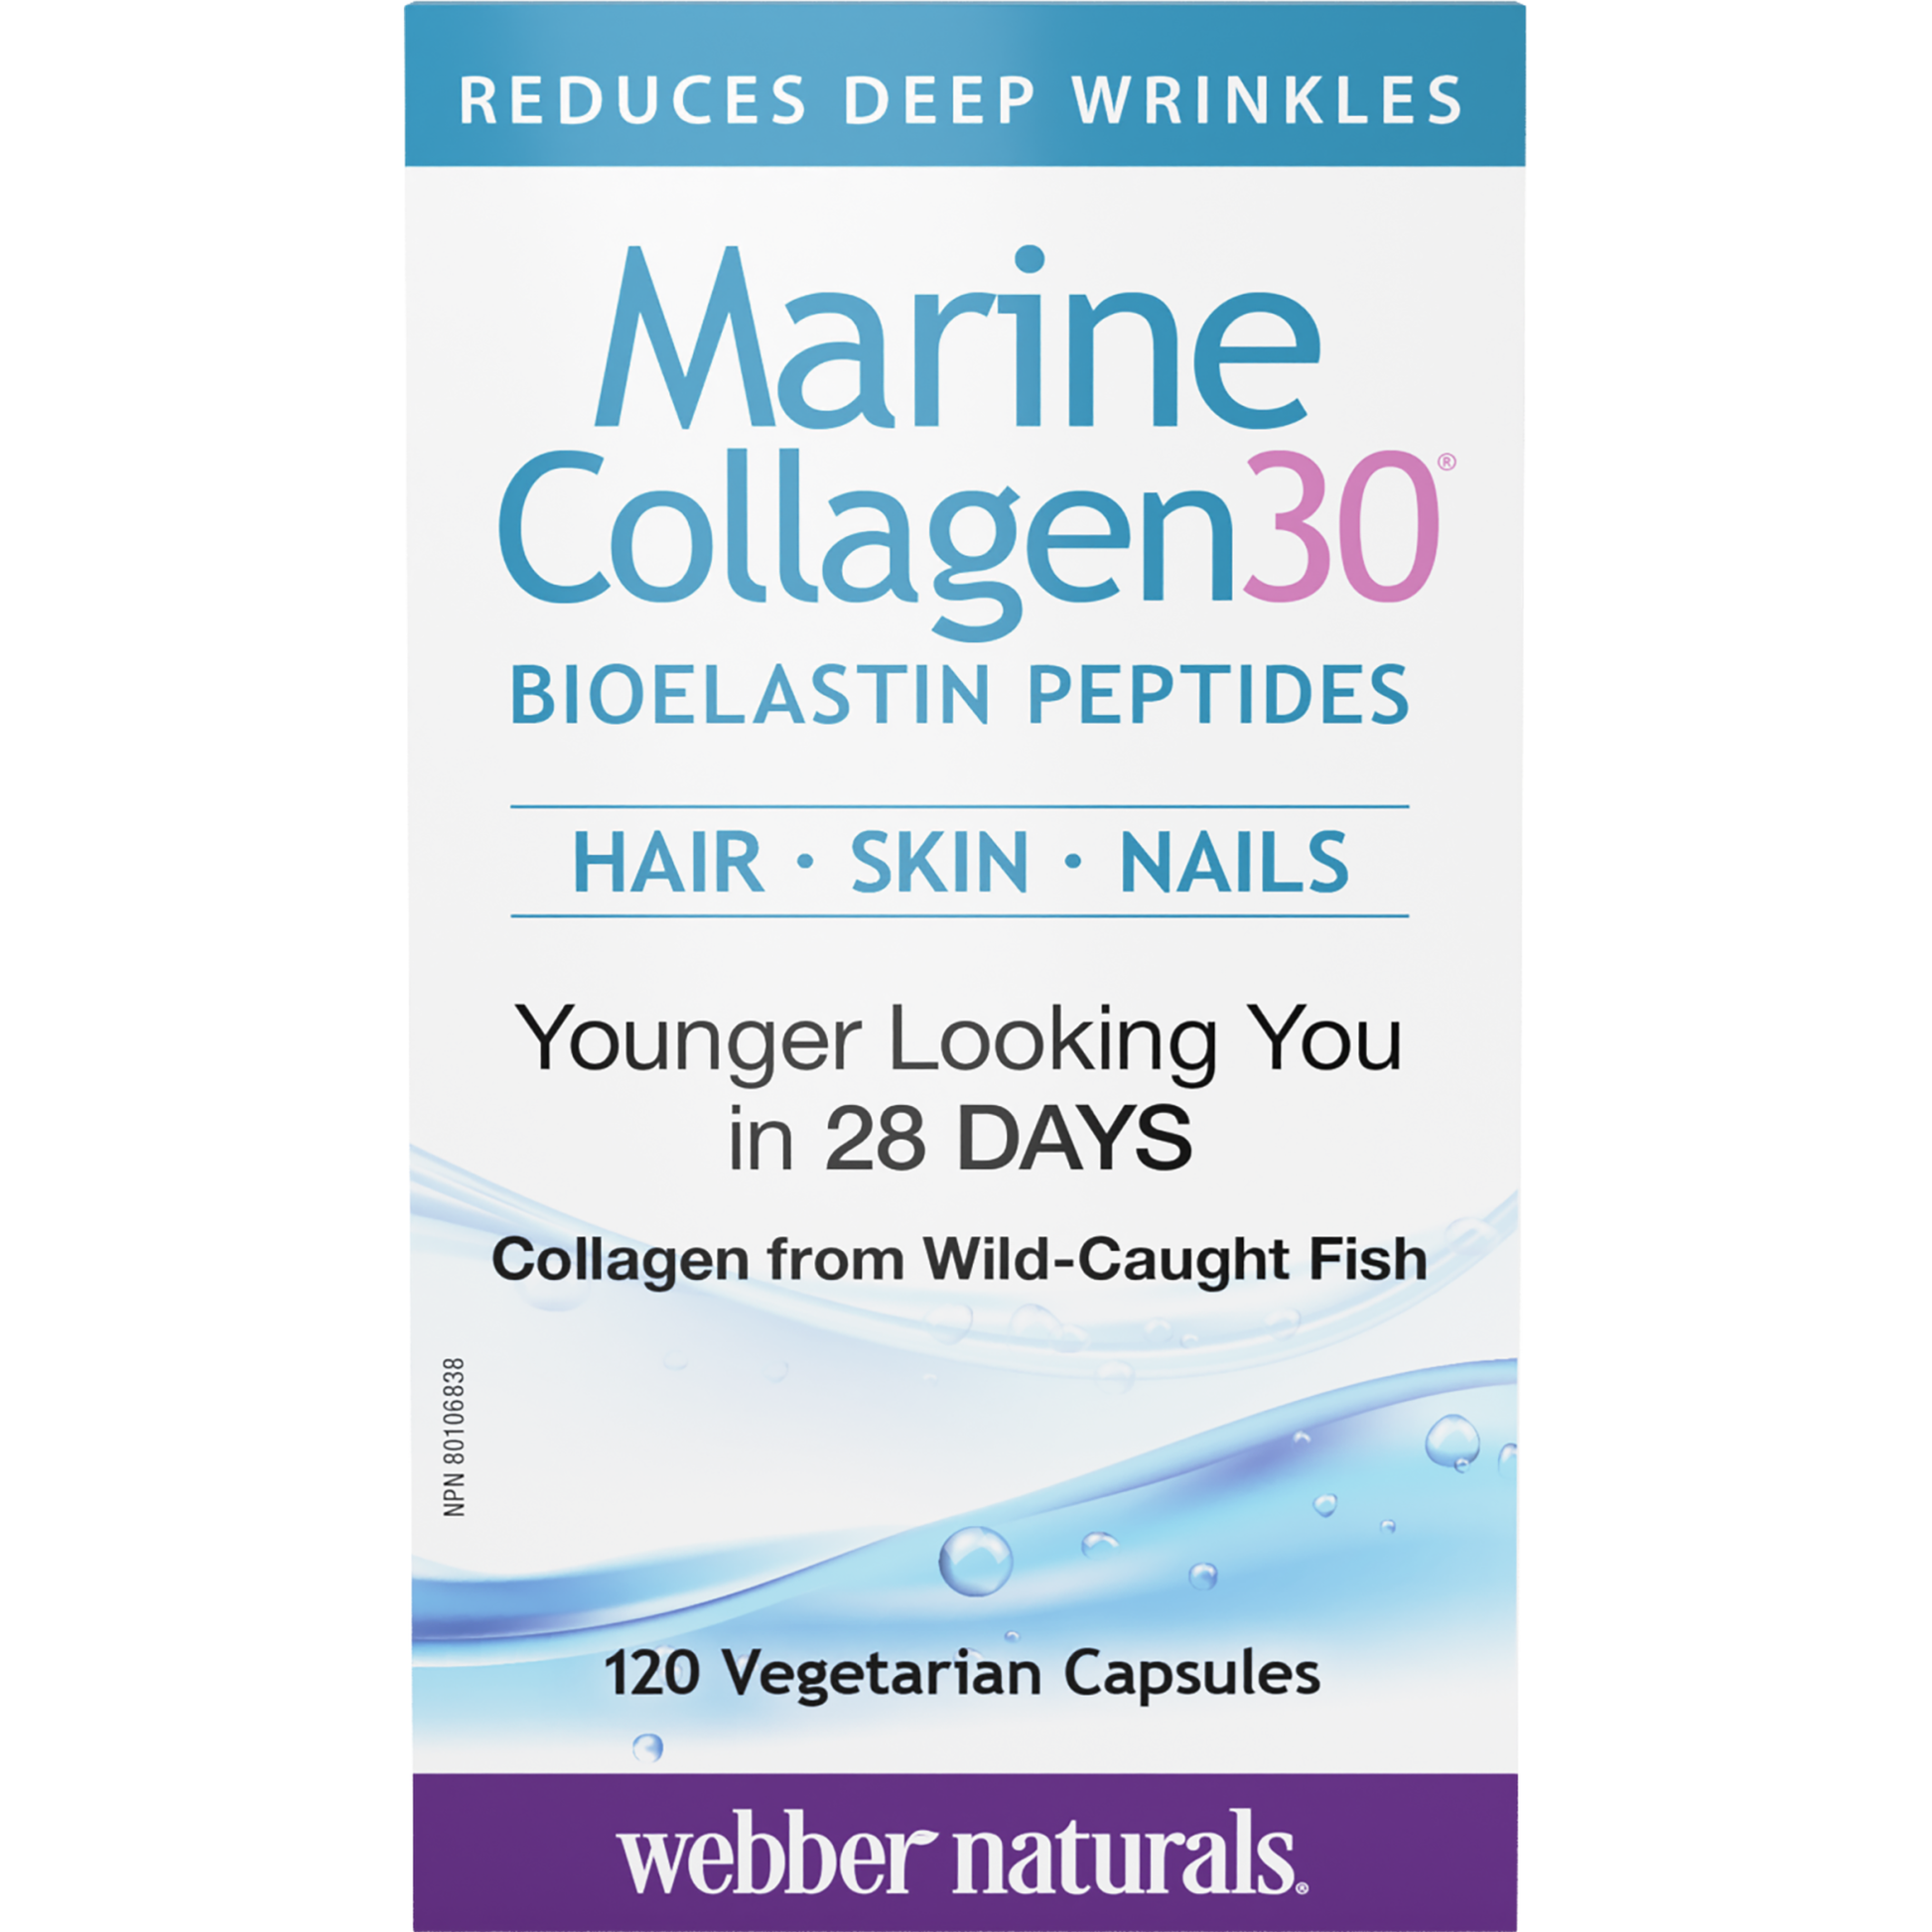 Marine Collagen30® Bioelastin Peptides for Webber Naturals|v|hi-res|WN3657